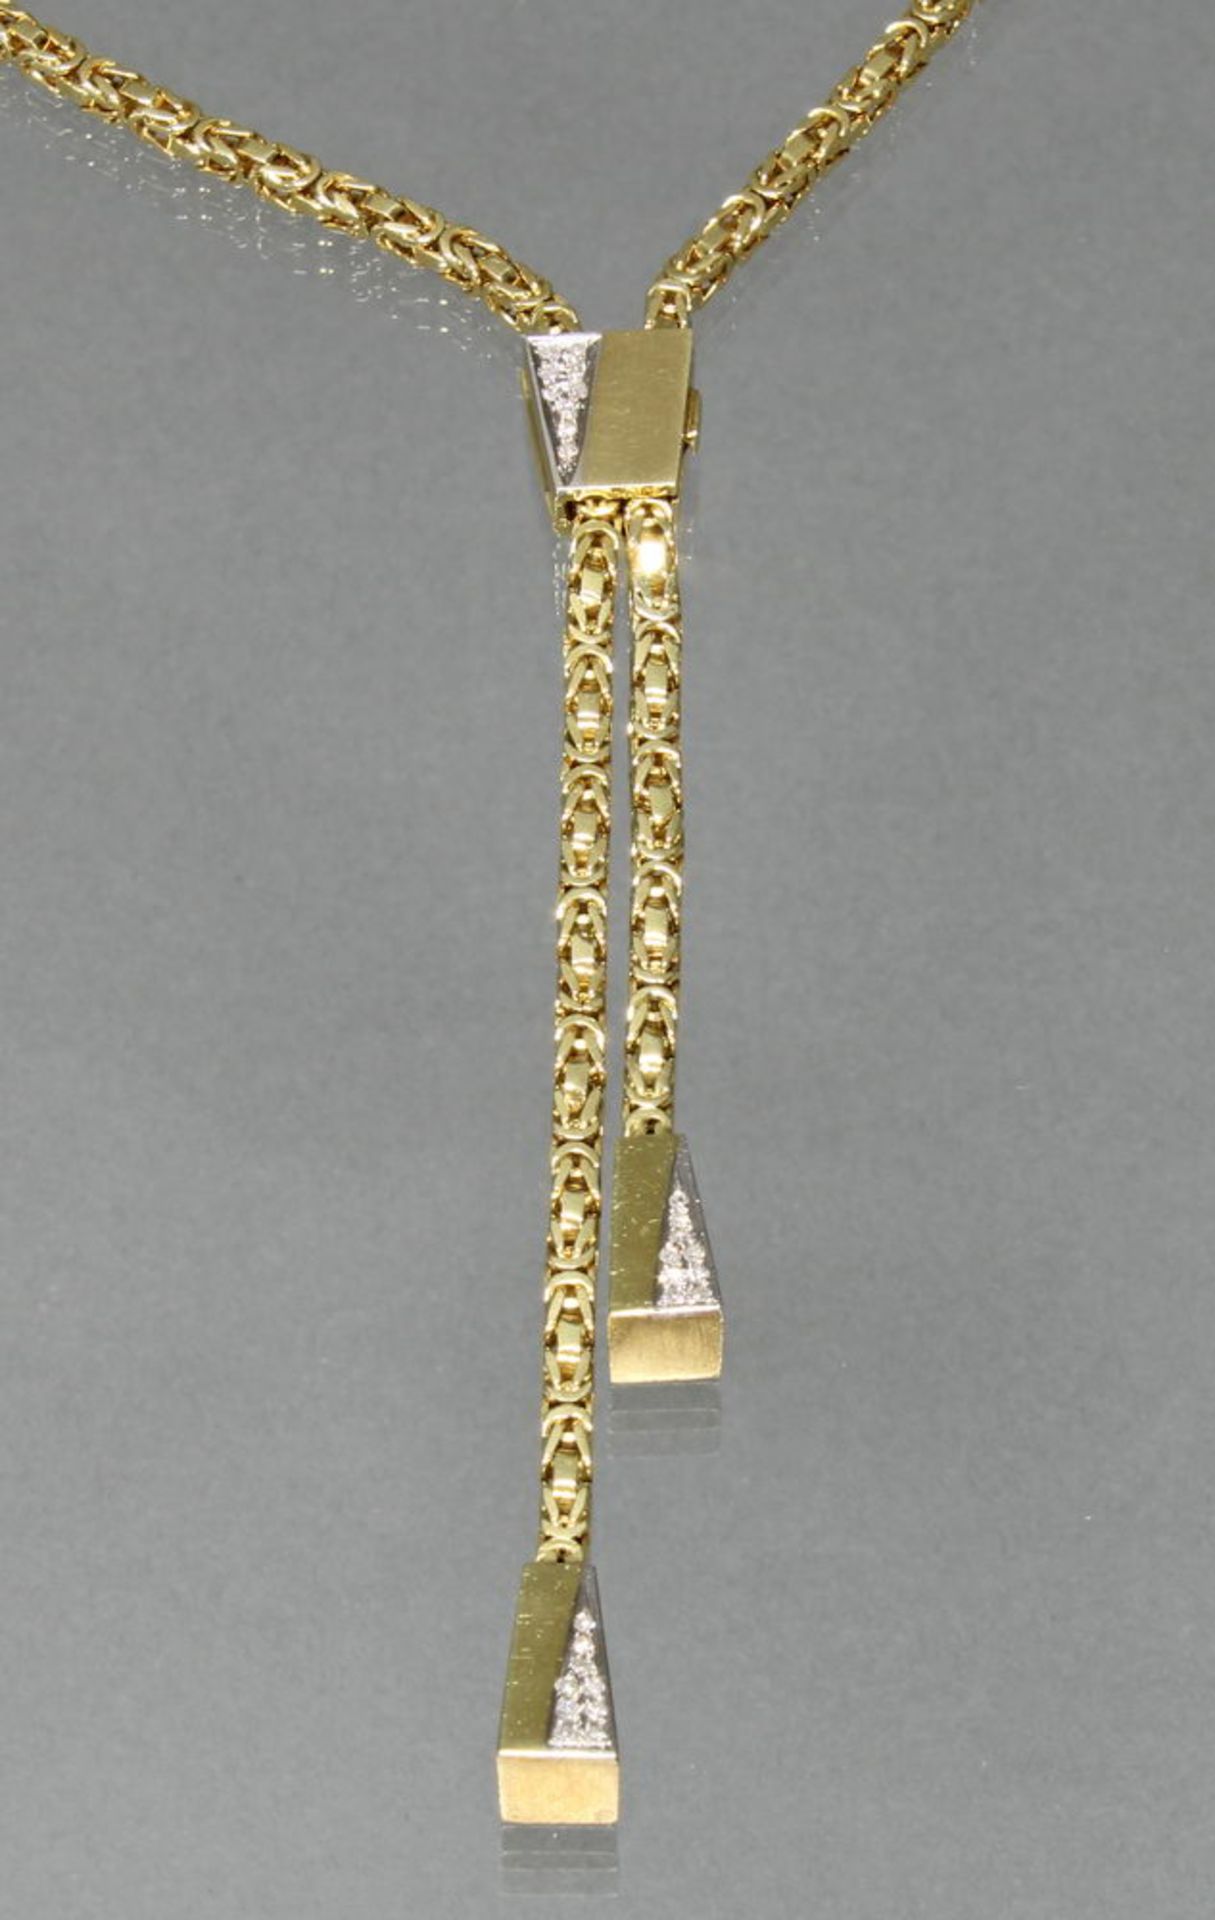 Y-Collier/Königskette, mit Verstellclip, WG/GG 585, 27 Diamanten zus. ca. 0.25 ct., alle etwa fw/s - Image 2 of 2